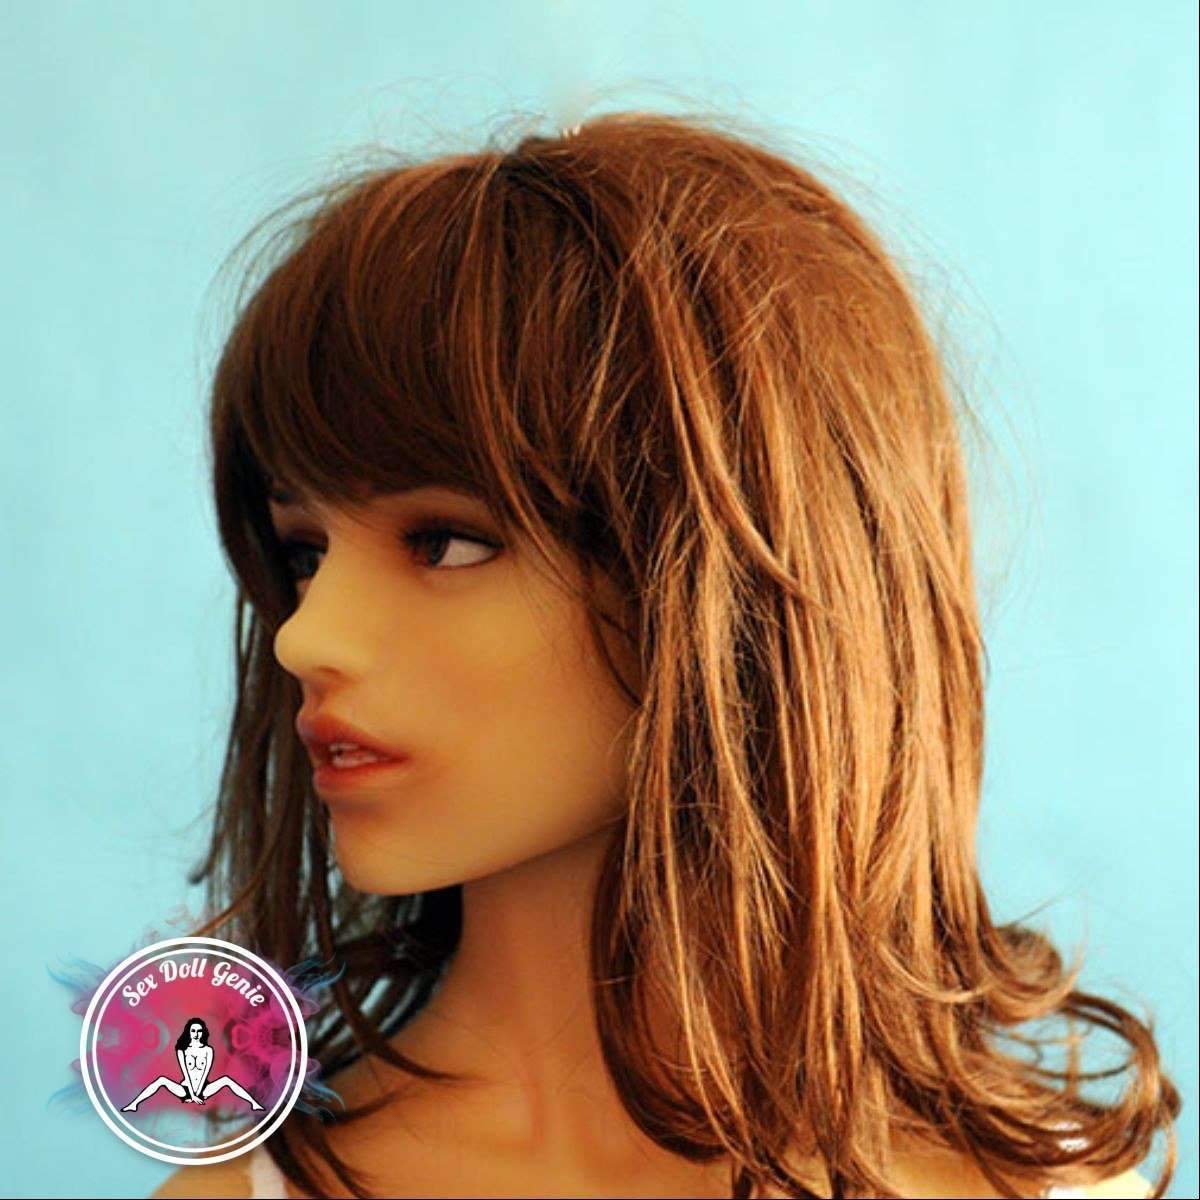 DS Doll - 158cm - Mandy Head - Muñeca de Silicona Tipo 2 Copa D-22